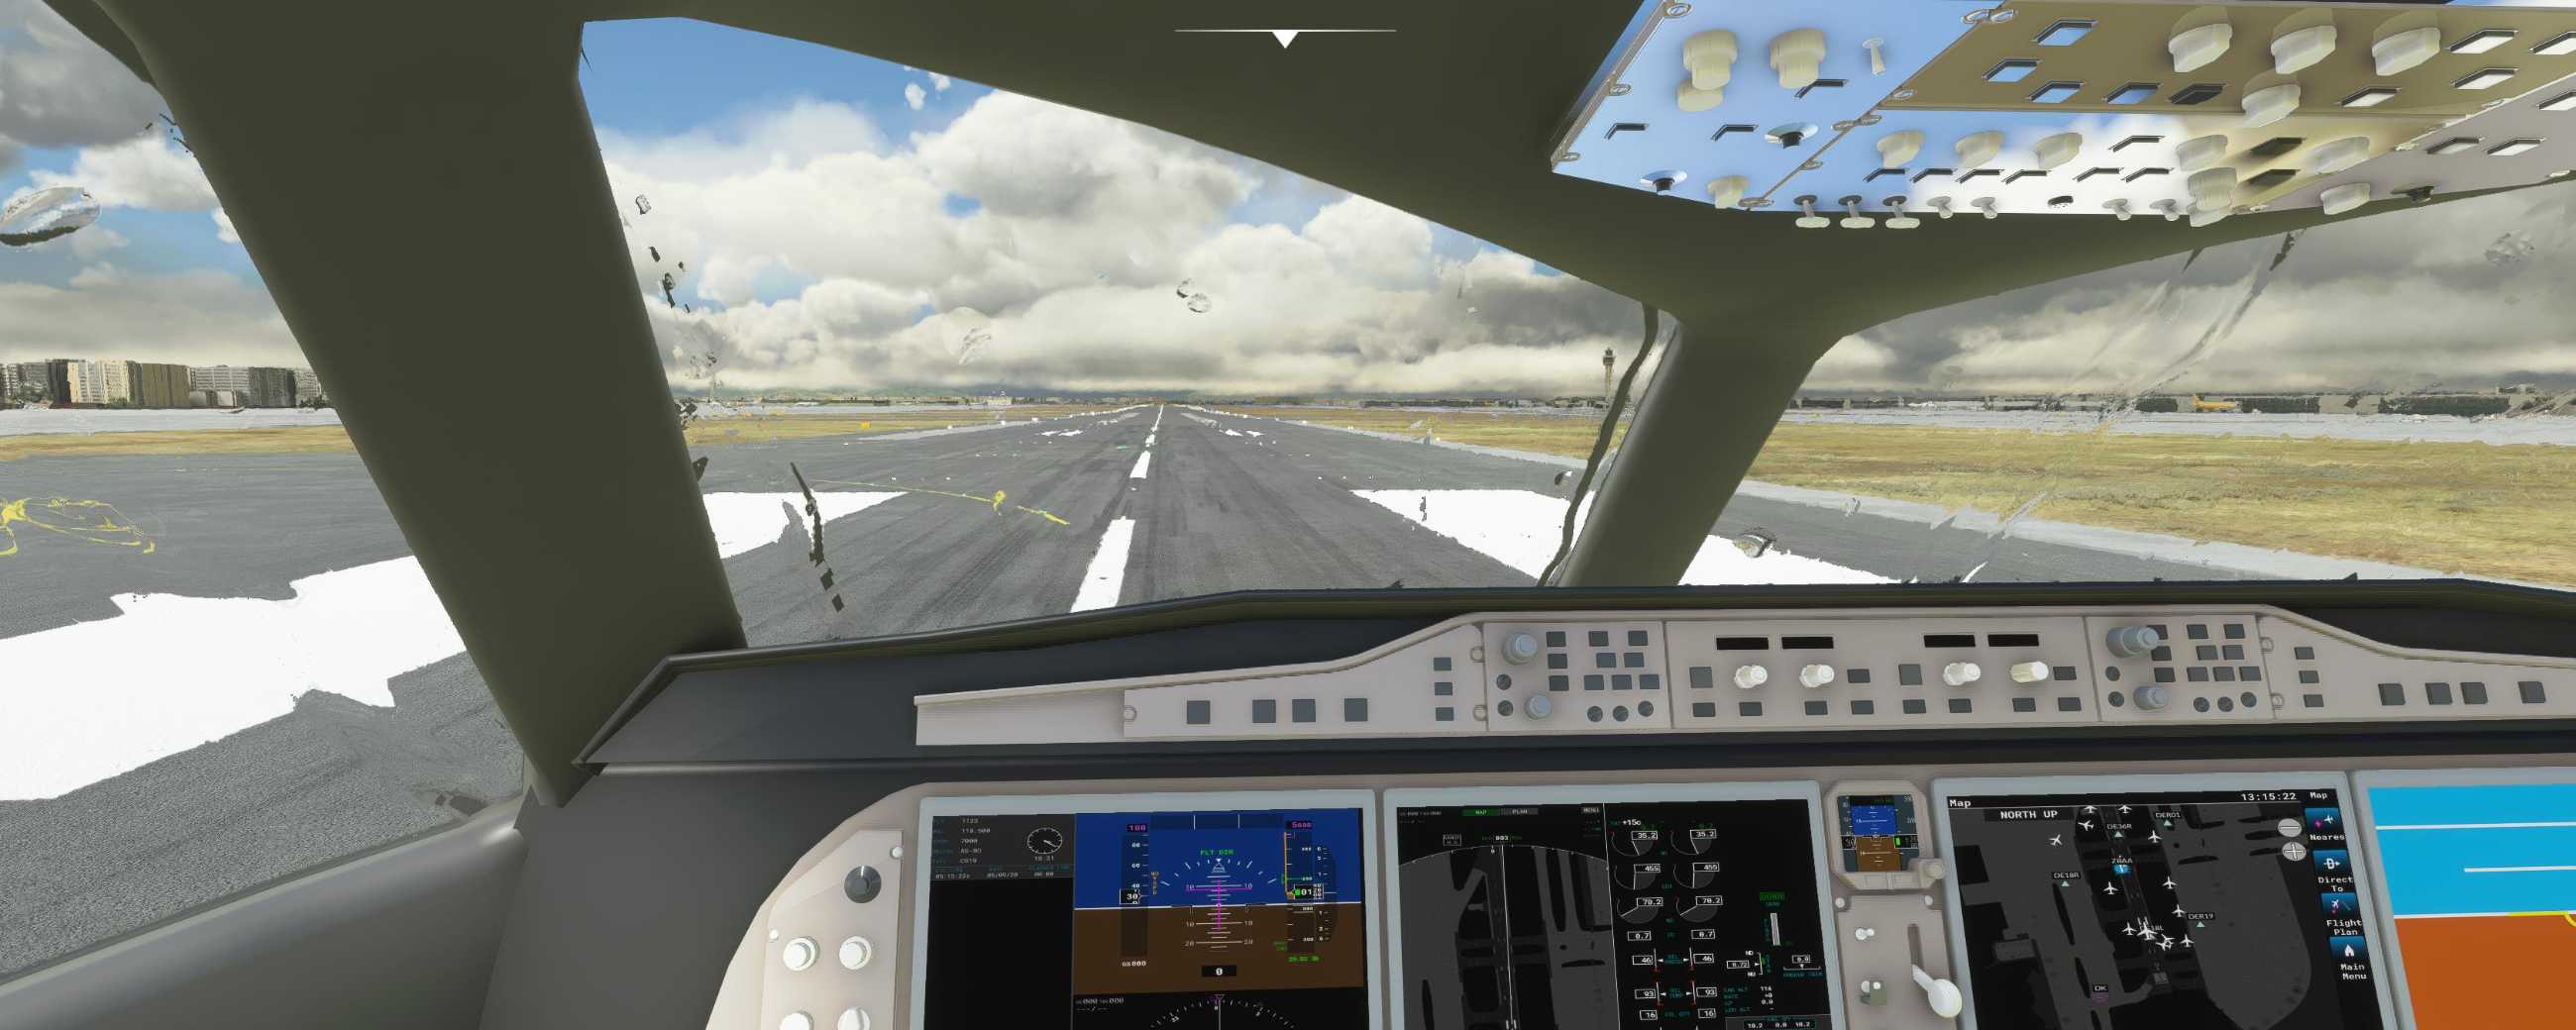 FYCYC-C919 国产大飞机机模 微软模拟飞行演示-2389 